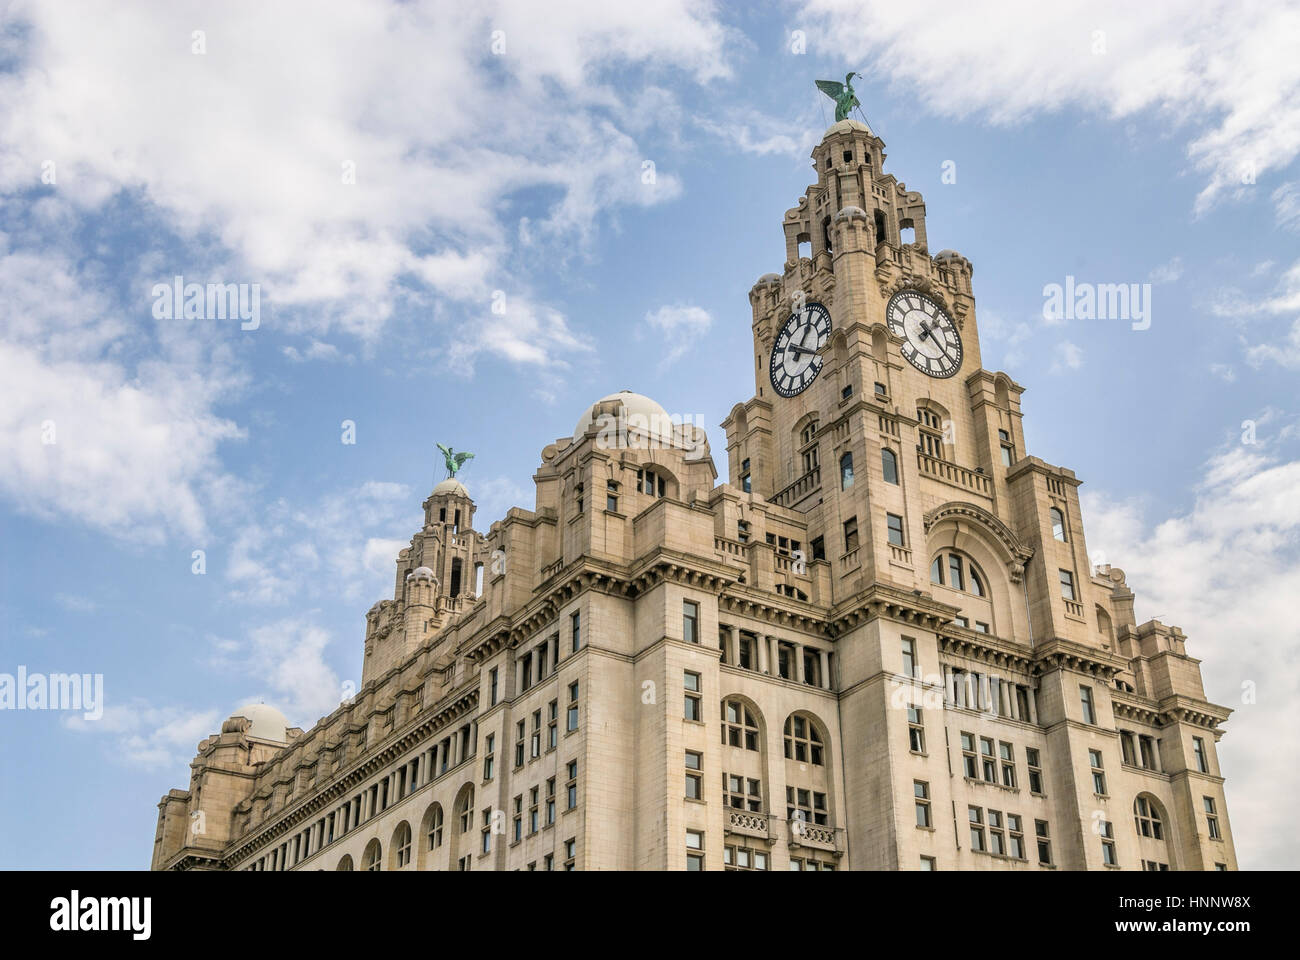 Le Royal Liver Building est un bâtiment classé situé à Liverpool, en Angleterre. Banque D'Images